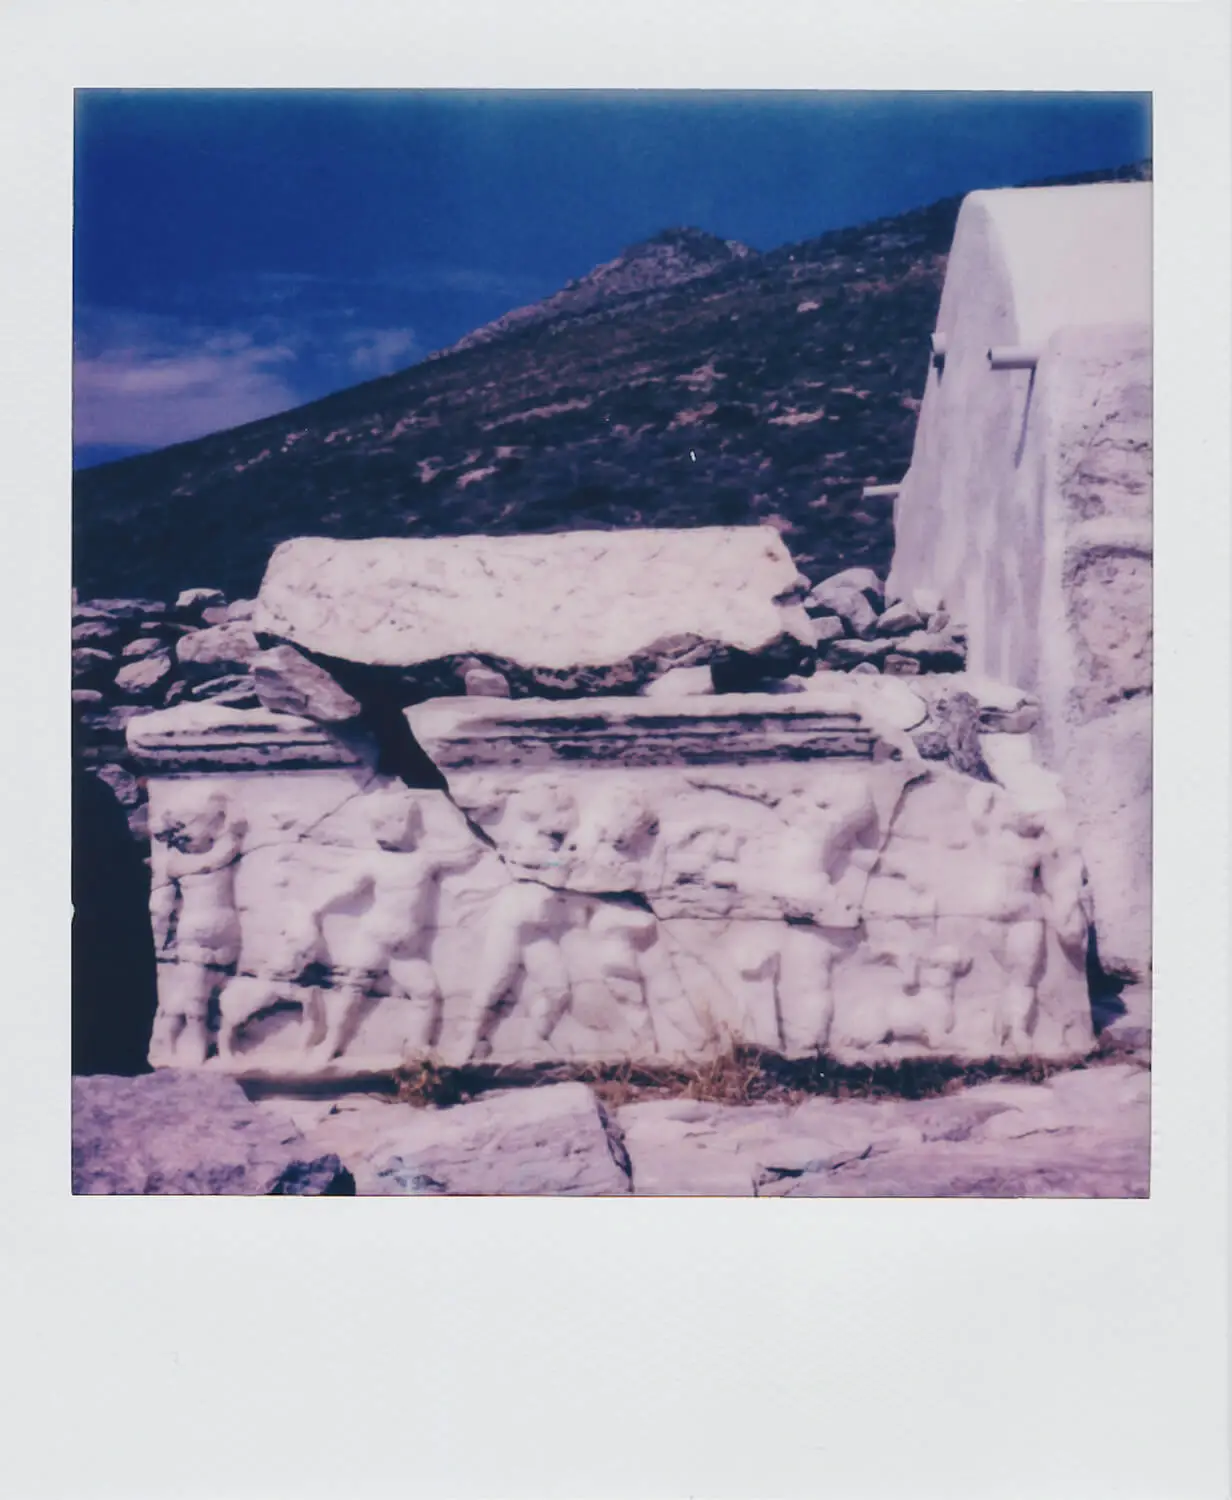 5 καρέ ... από μια Polaroid Color SX-70 στο μικρό ελληνικό νησί της Ανάφης (φακός ISO 160 / Polaroid SX-70 + 116mm f/8) – Του Γιώργου Παυλόπουλου